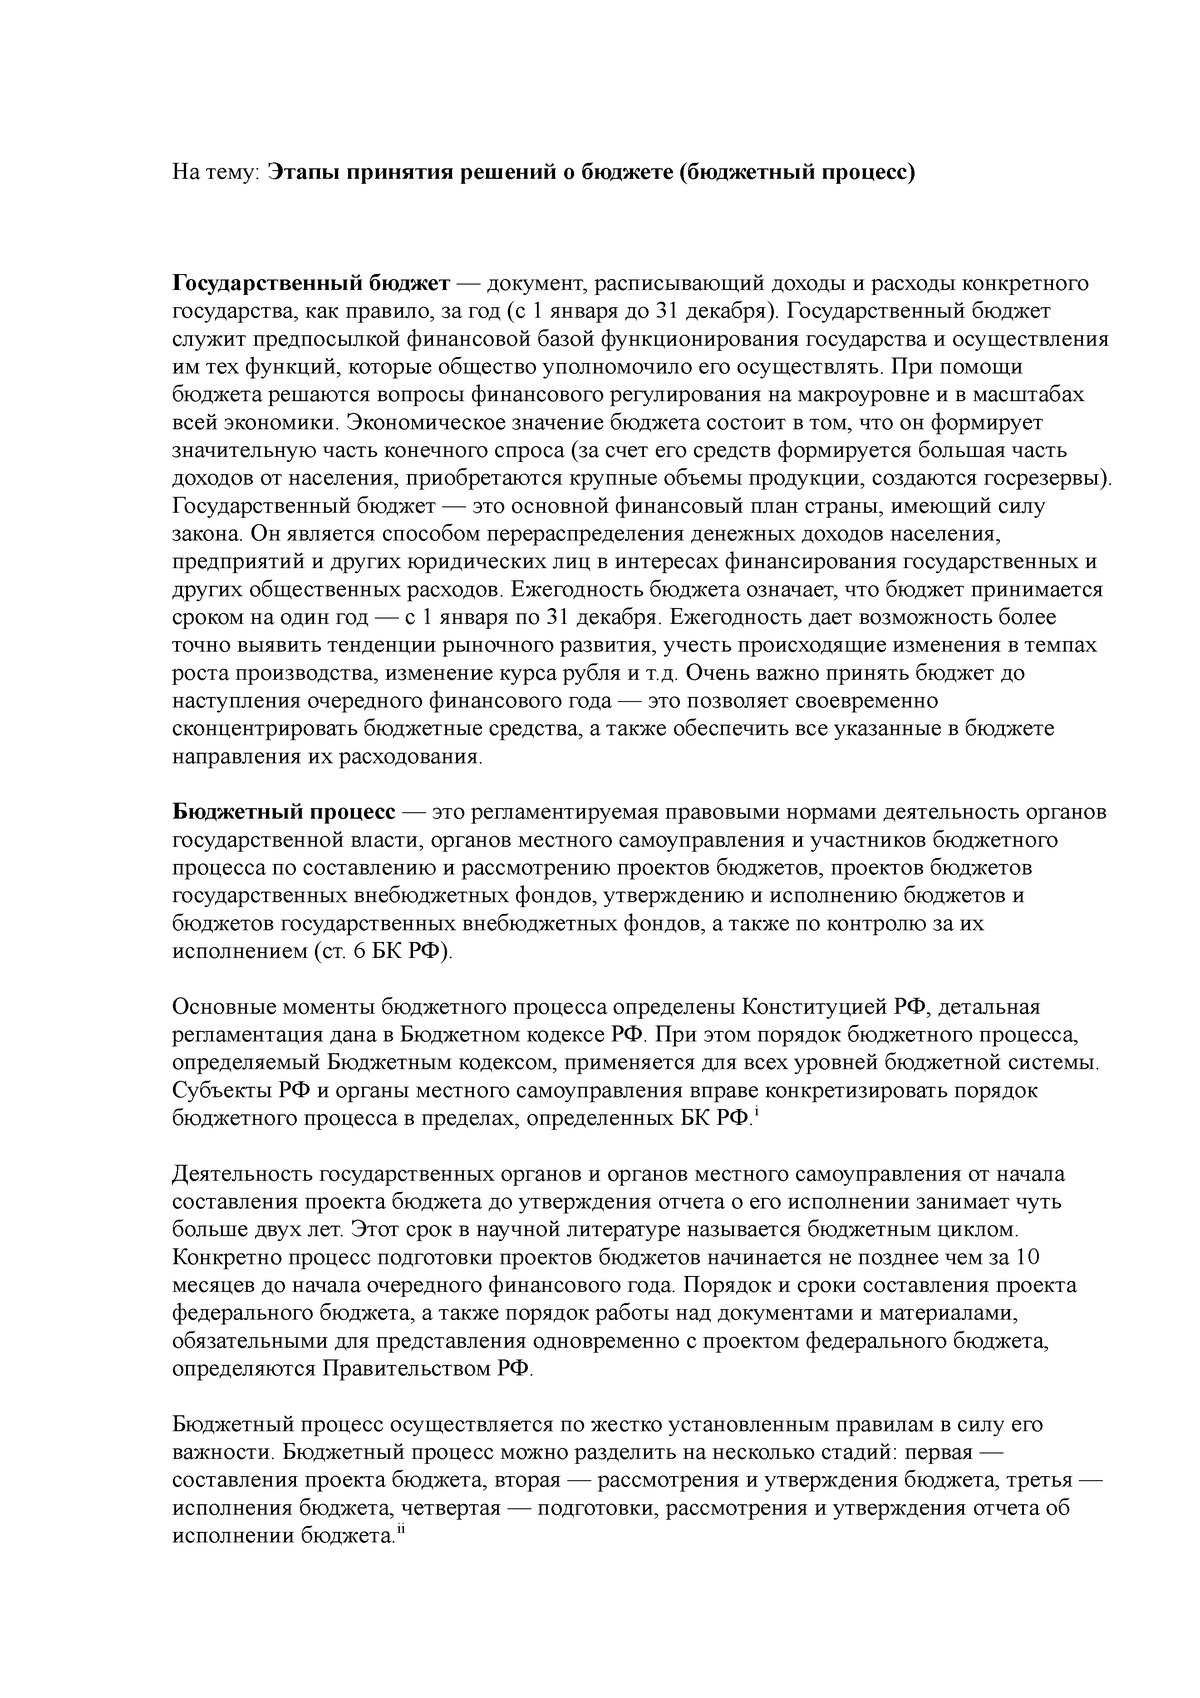 Реферат: Изучение правового регулирования расходов бюджета России